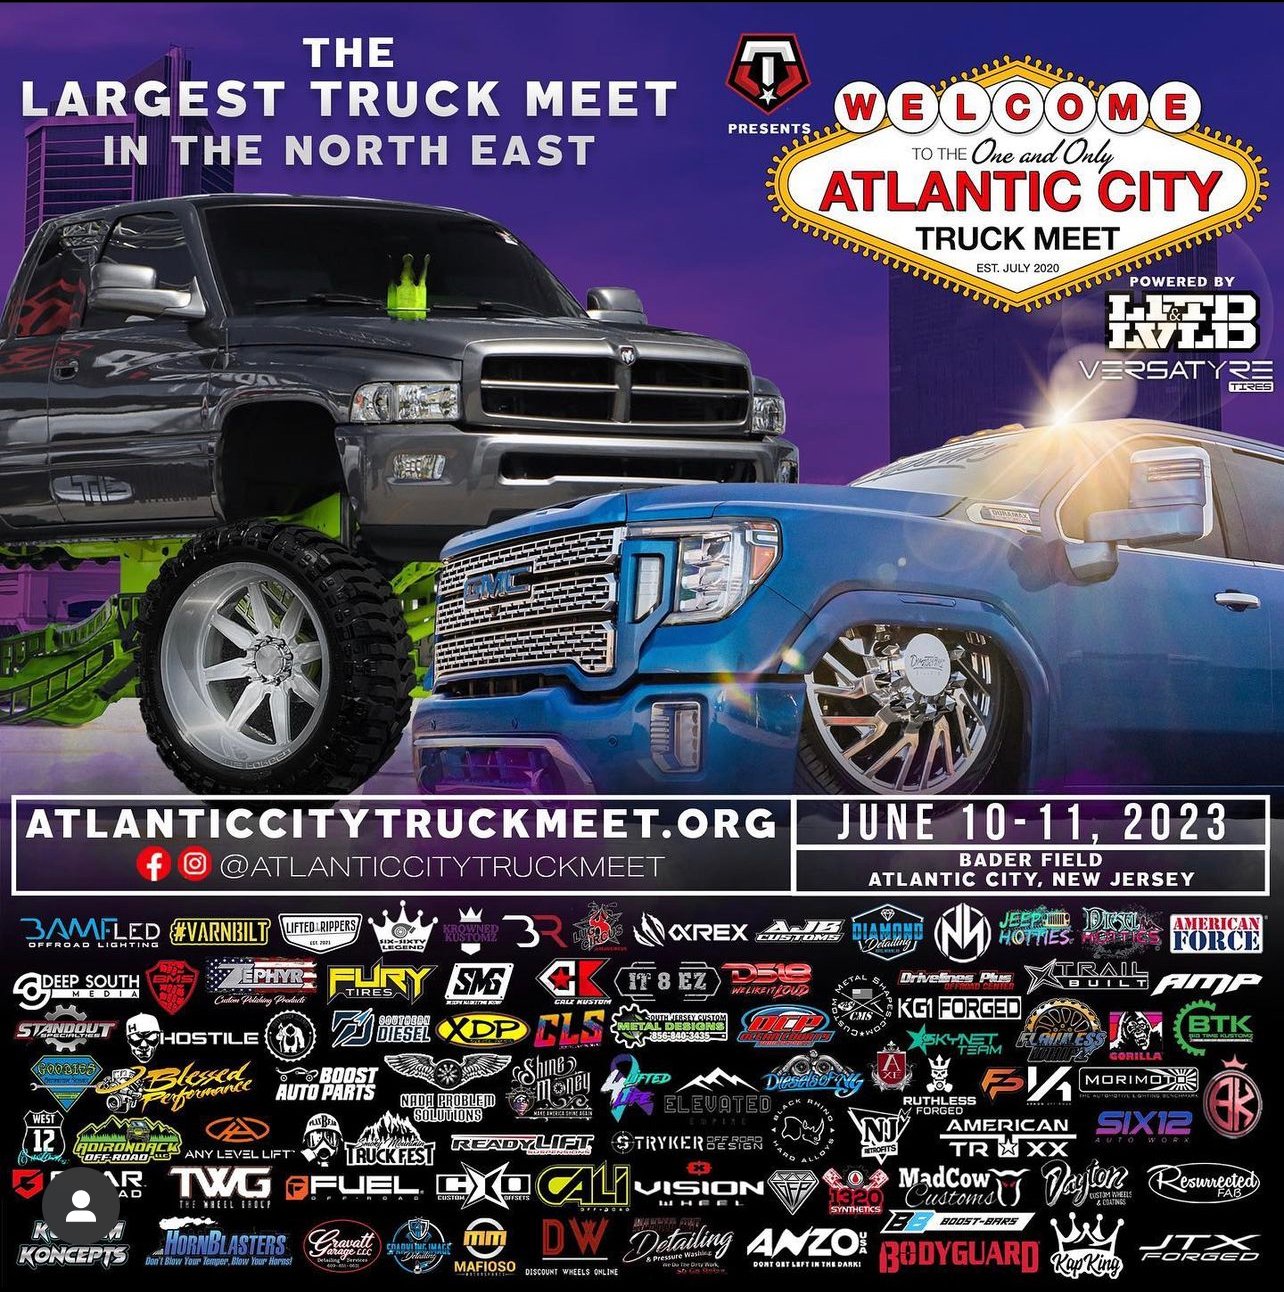 June 10-11 Atlantic City Truck Meet